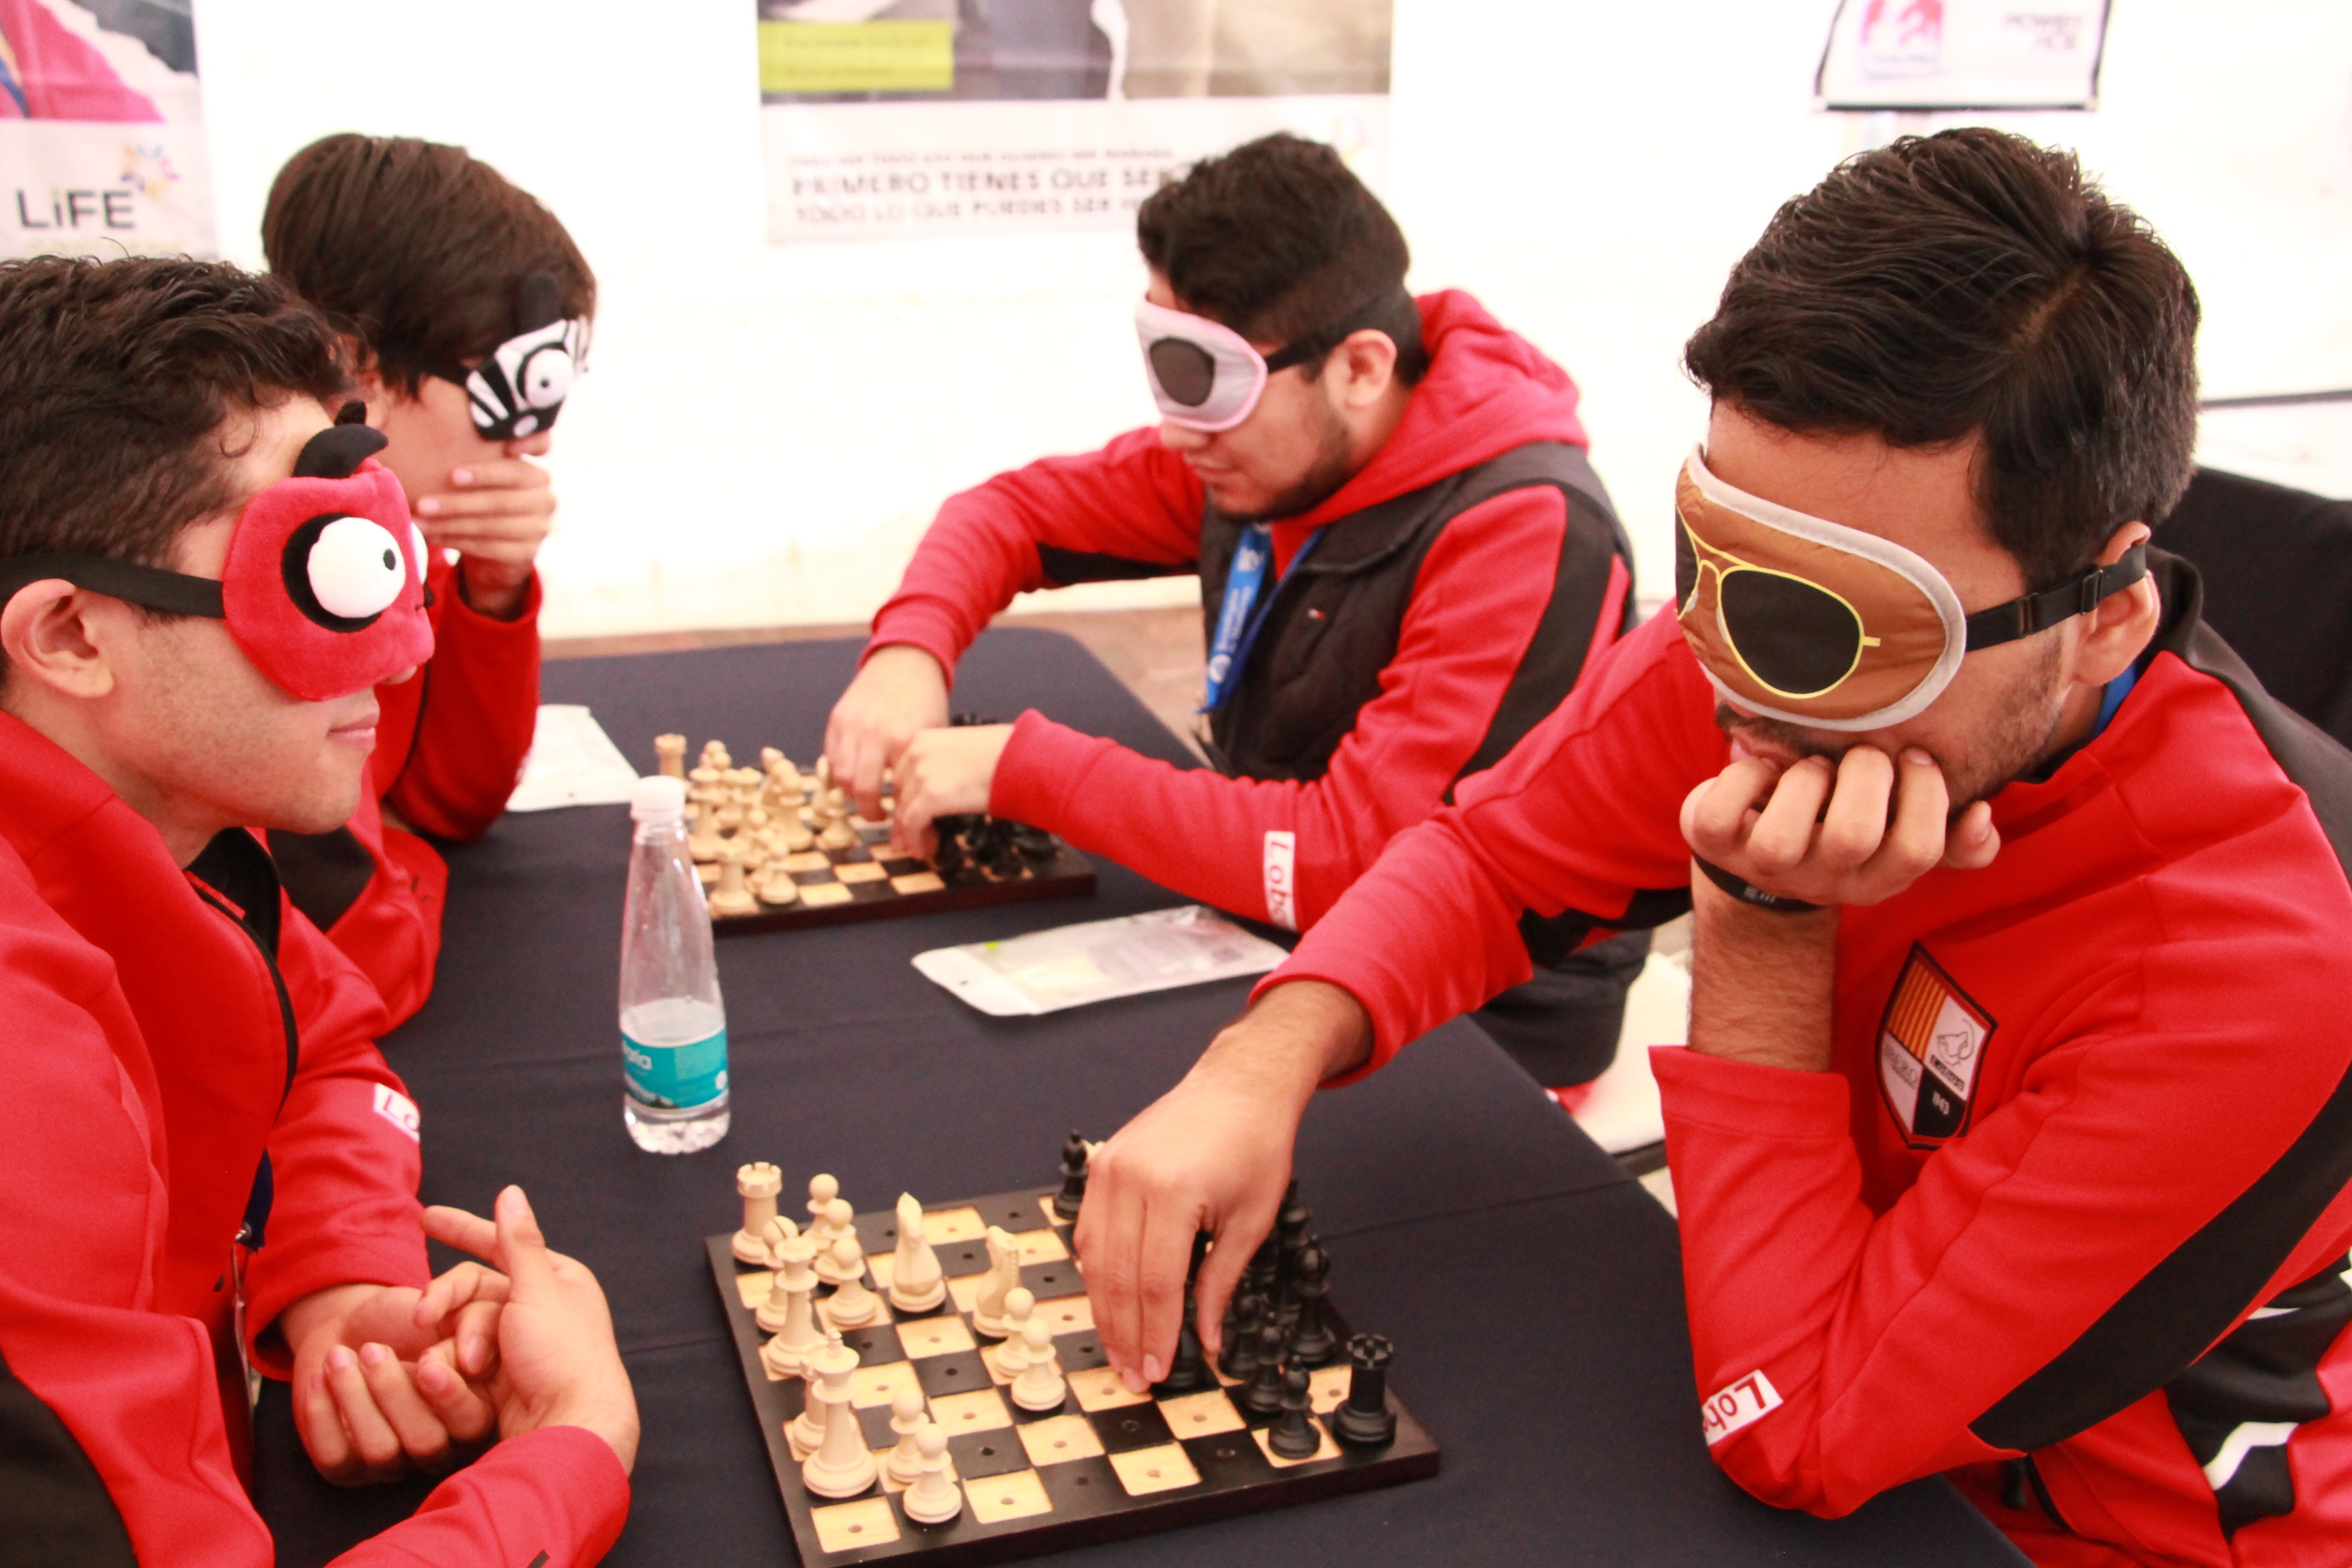 Los jóvenes jugaron con un ajedrez creado para invidentes